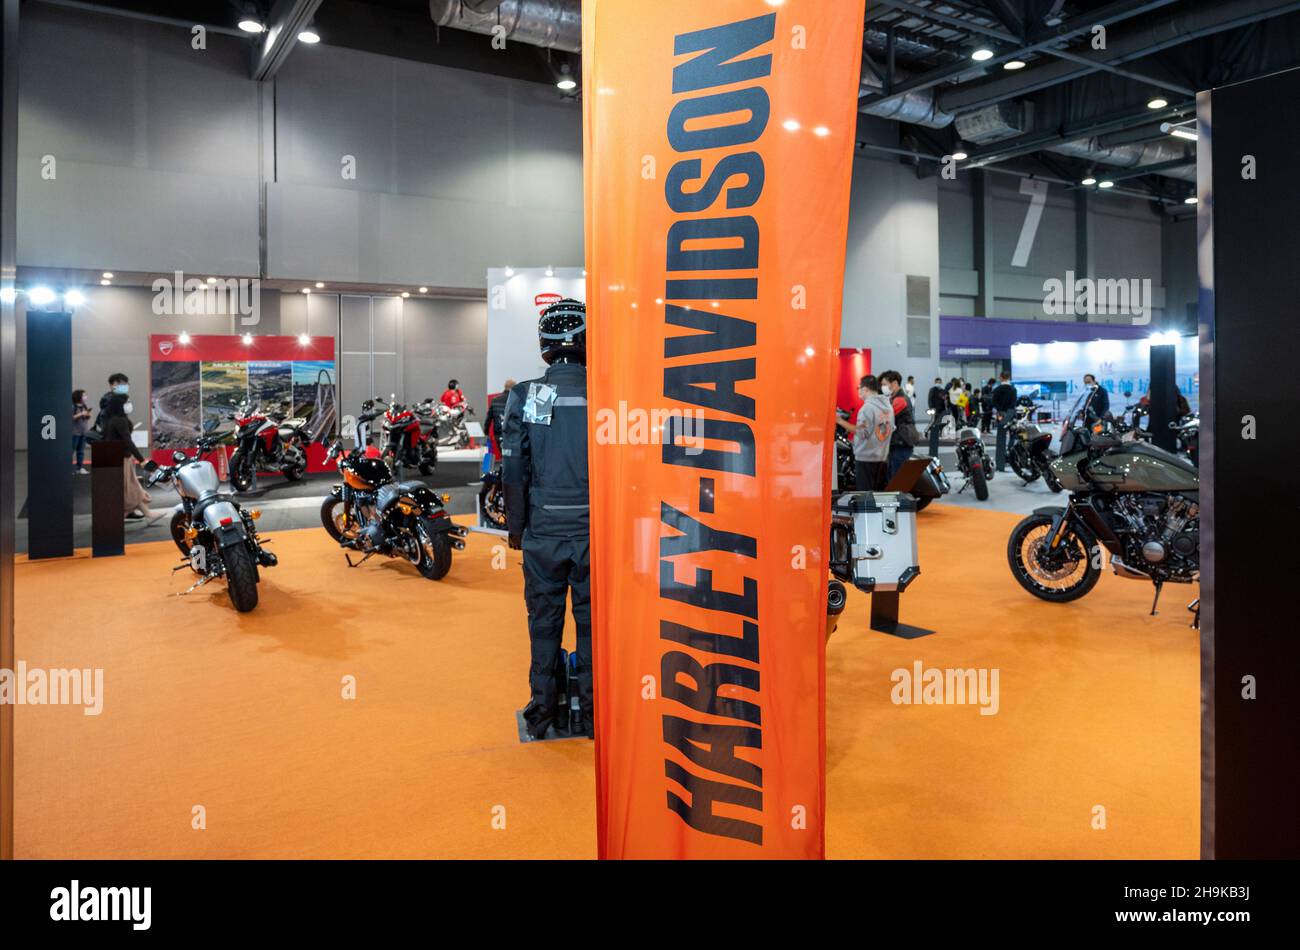 Le fabricant américain de motos Harley-Davidson s'est présenté au stand lors de l'International Motor Expo (IMXHK), qui présente des voitures et des motos thermiques et électriques à Hong Kong.(Photo de Budrul Chukrut / SOPA Images/Sipa USA) Banque D'Images